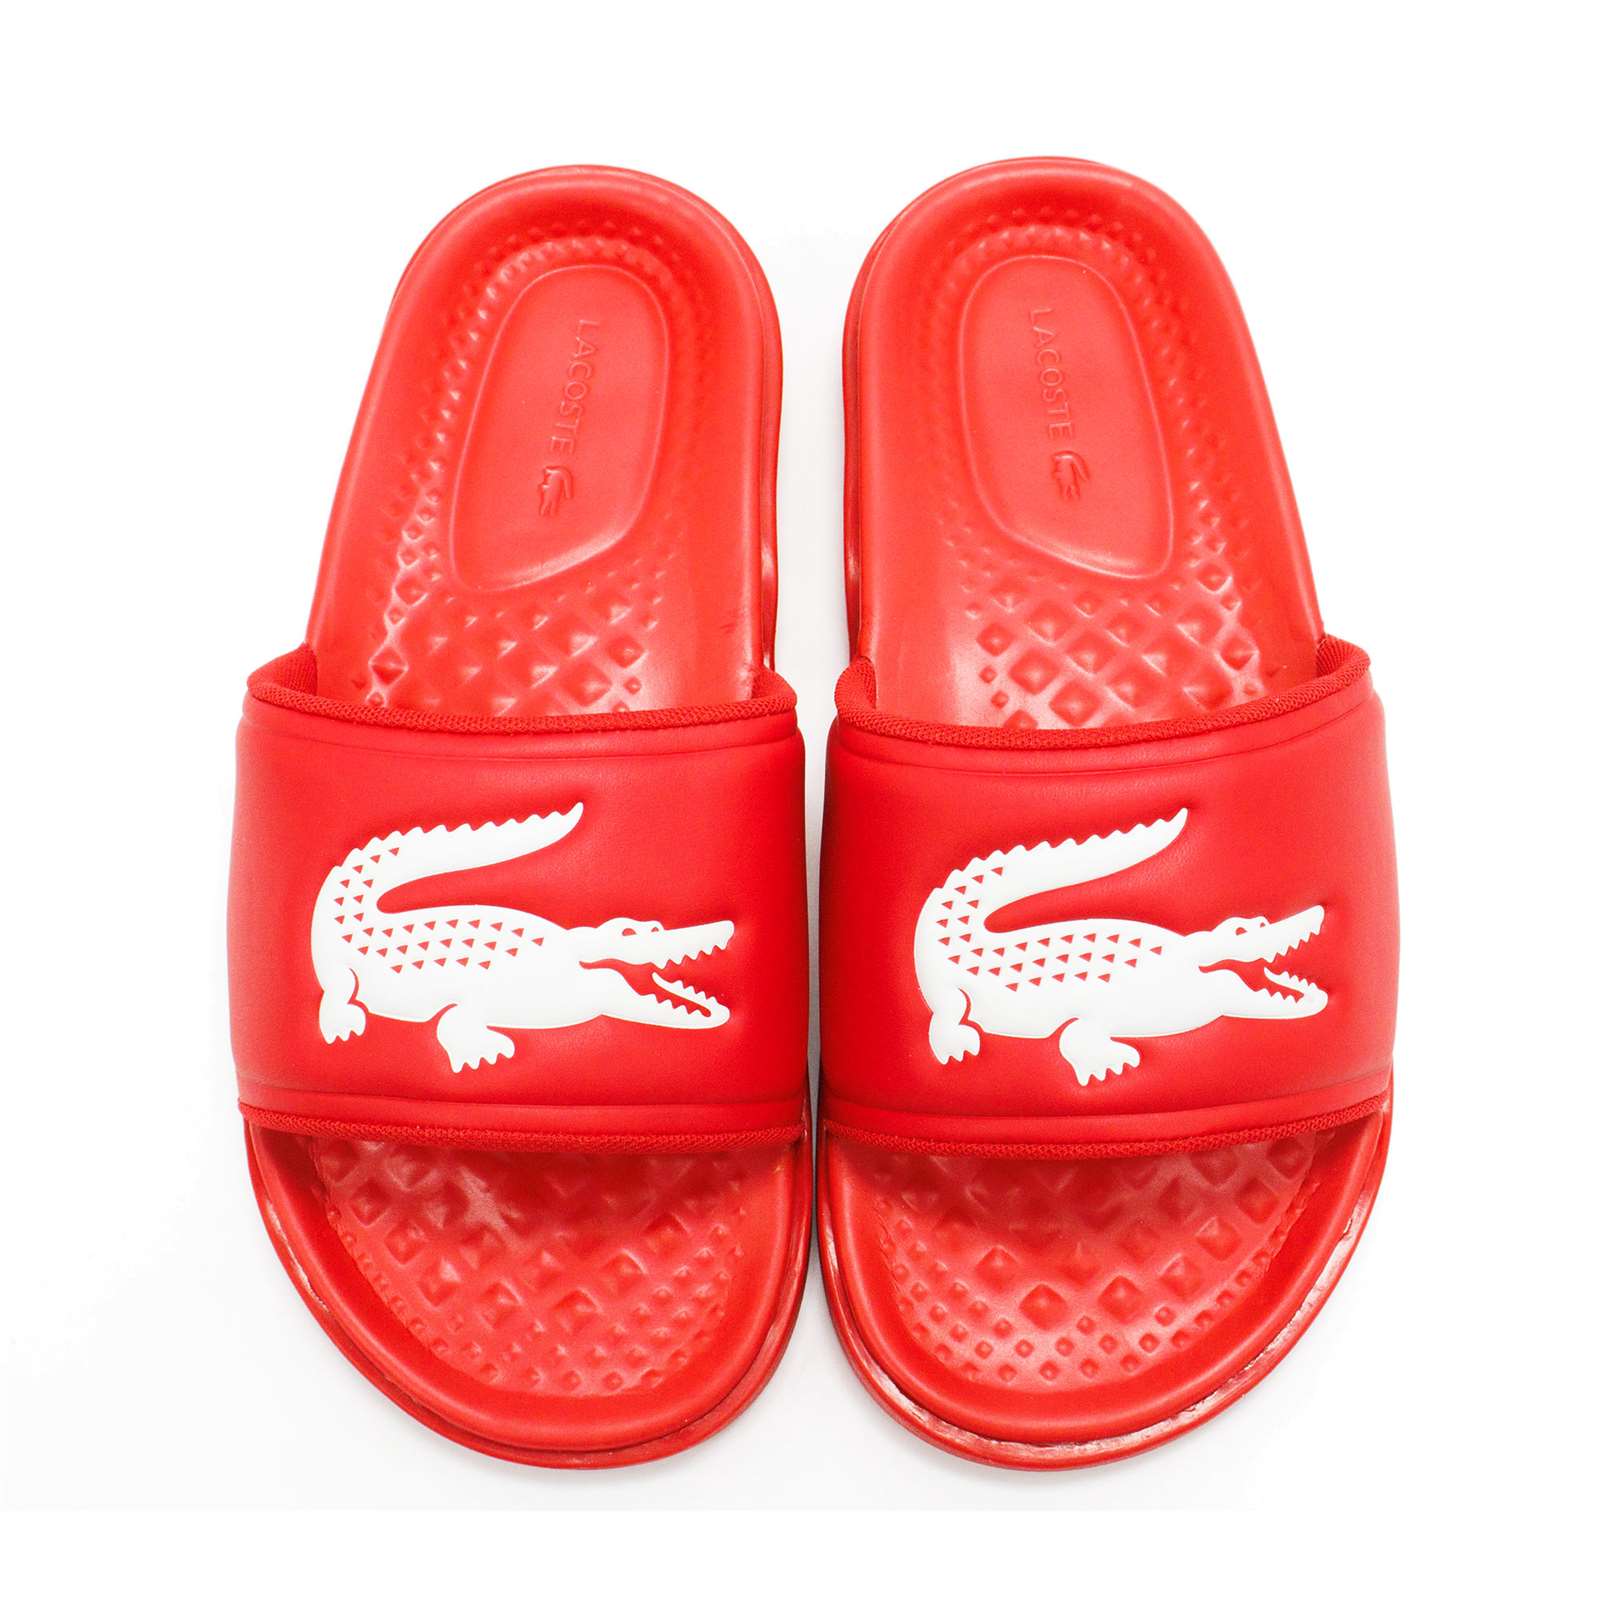 Lacoste Men Croco Dualiste 0922 1 Slide Sandals